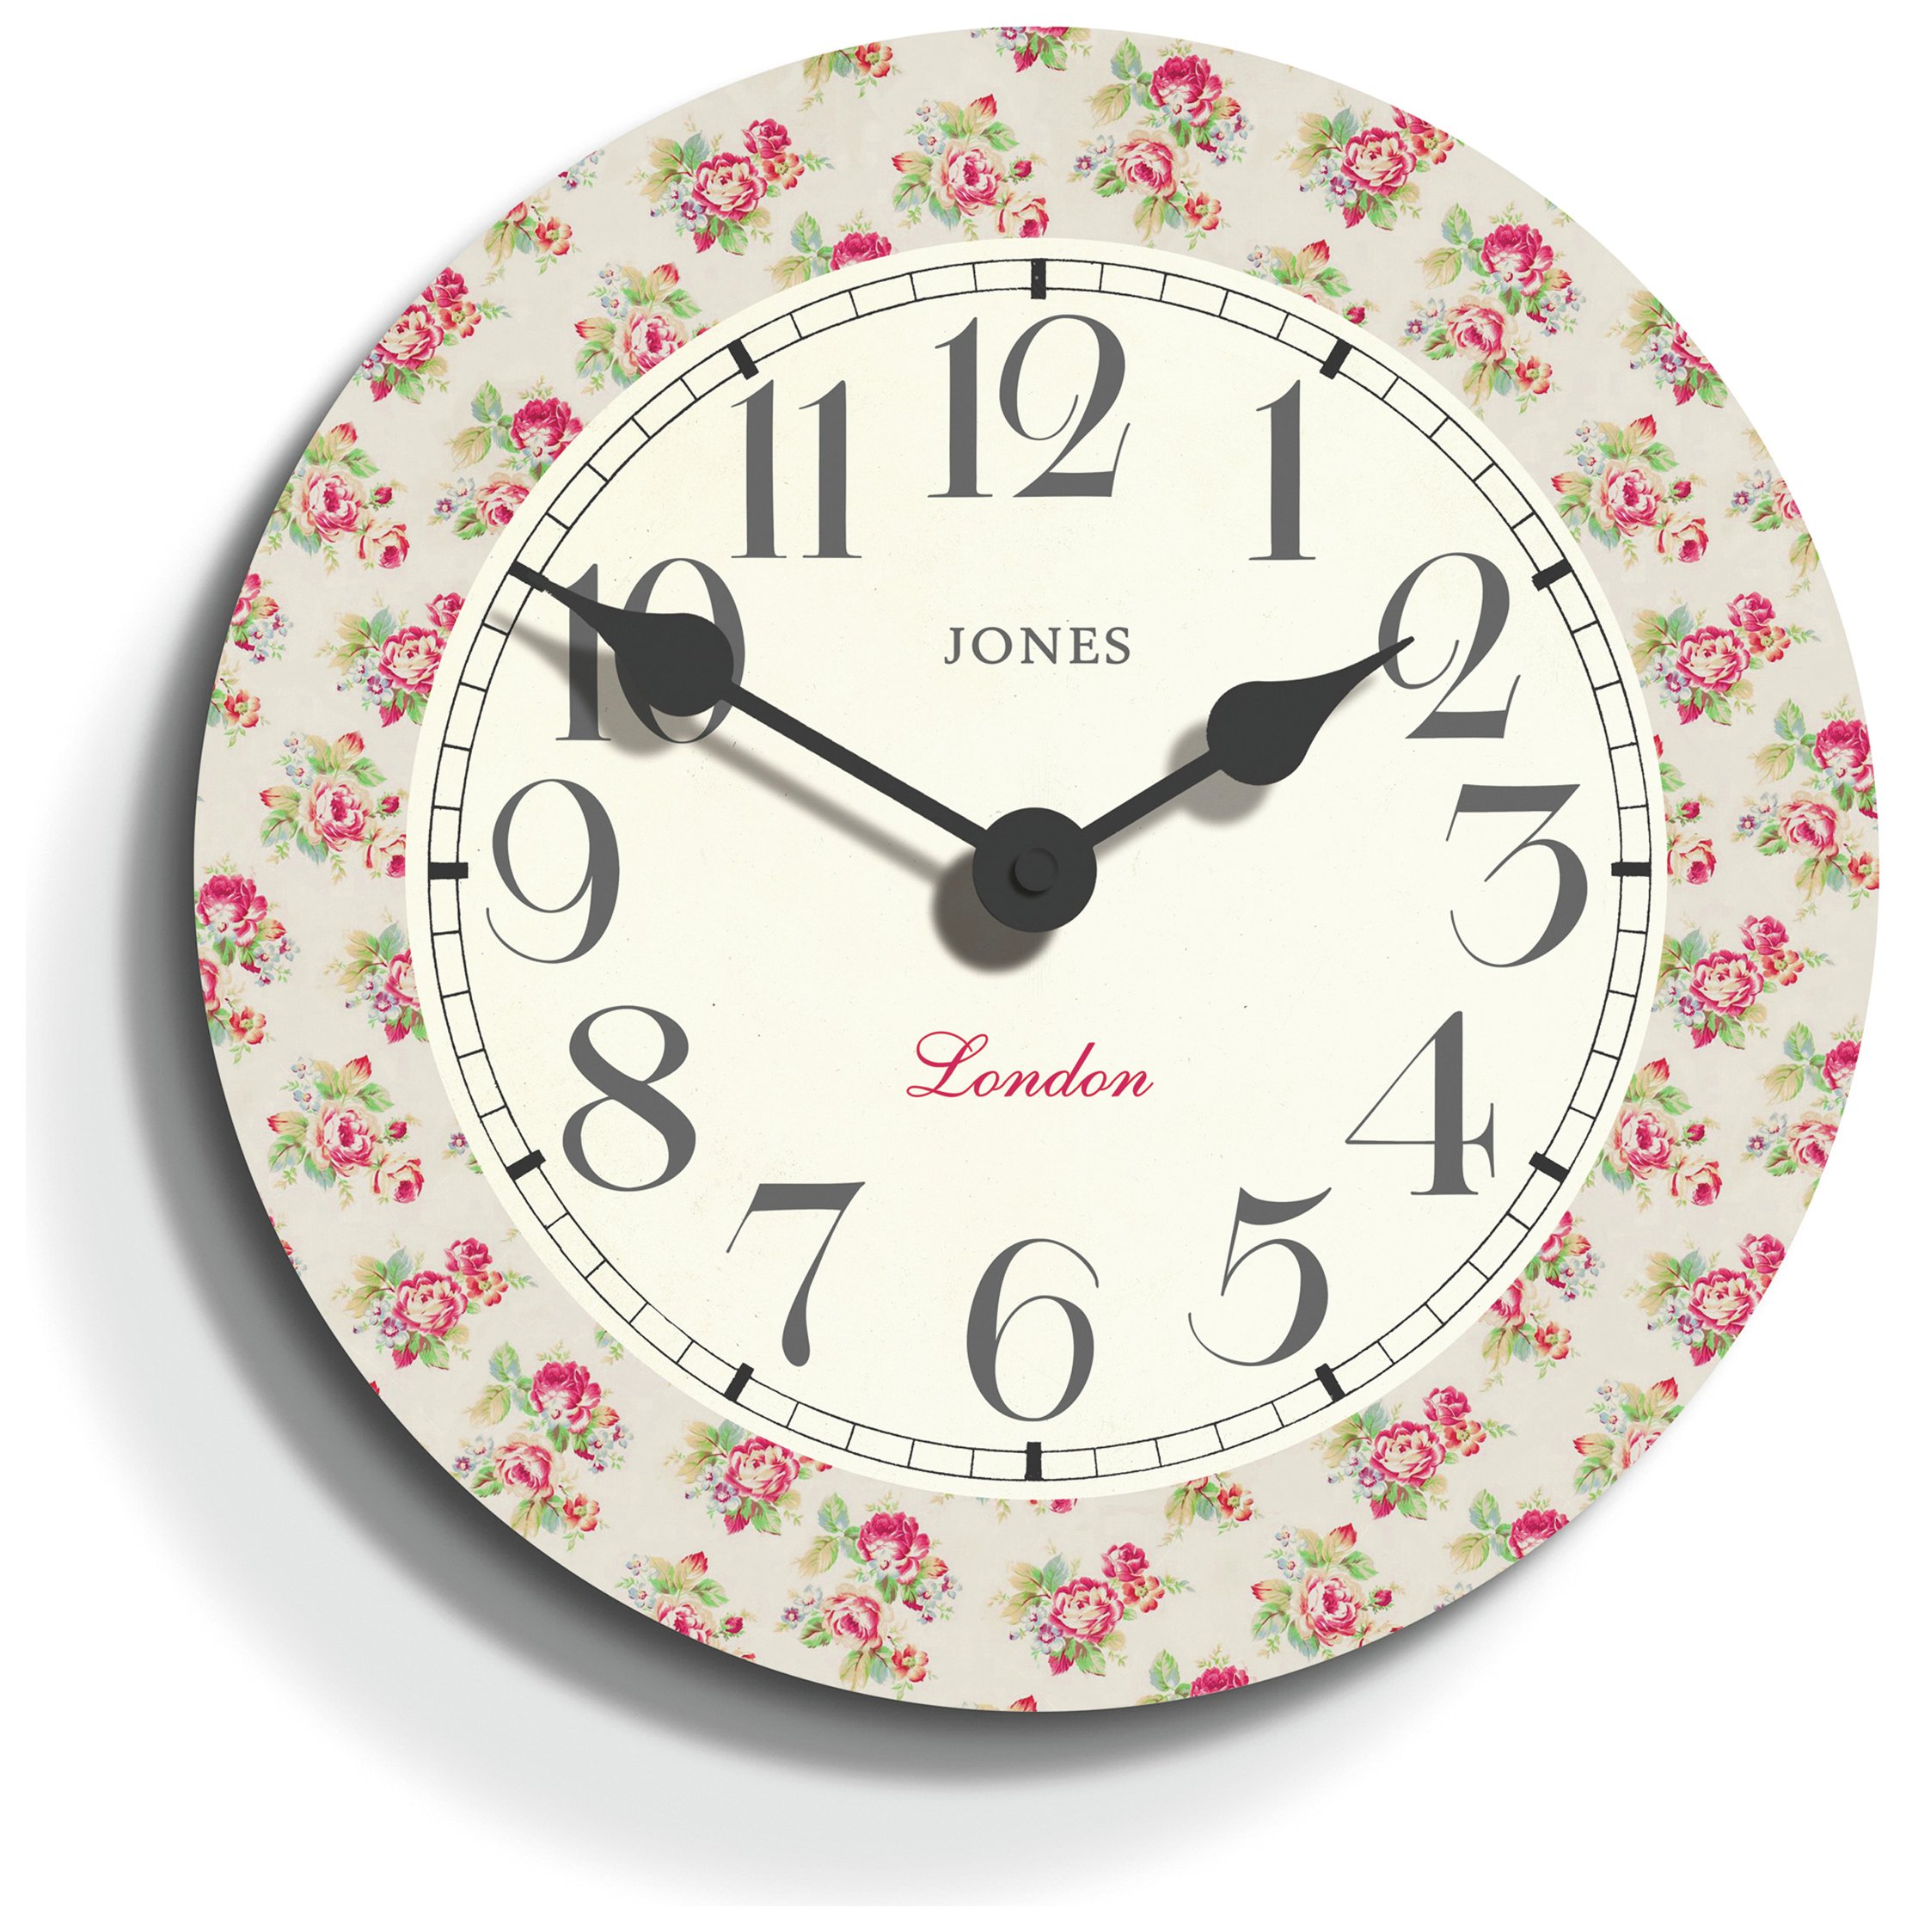 Jones Rose Clock. Review